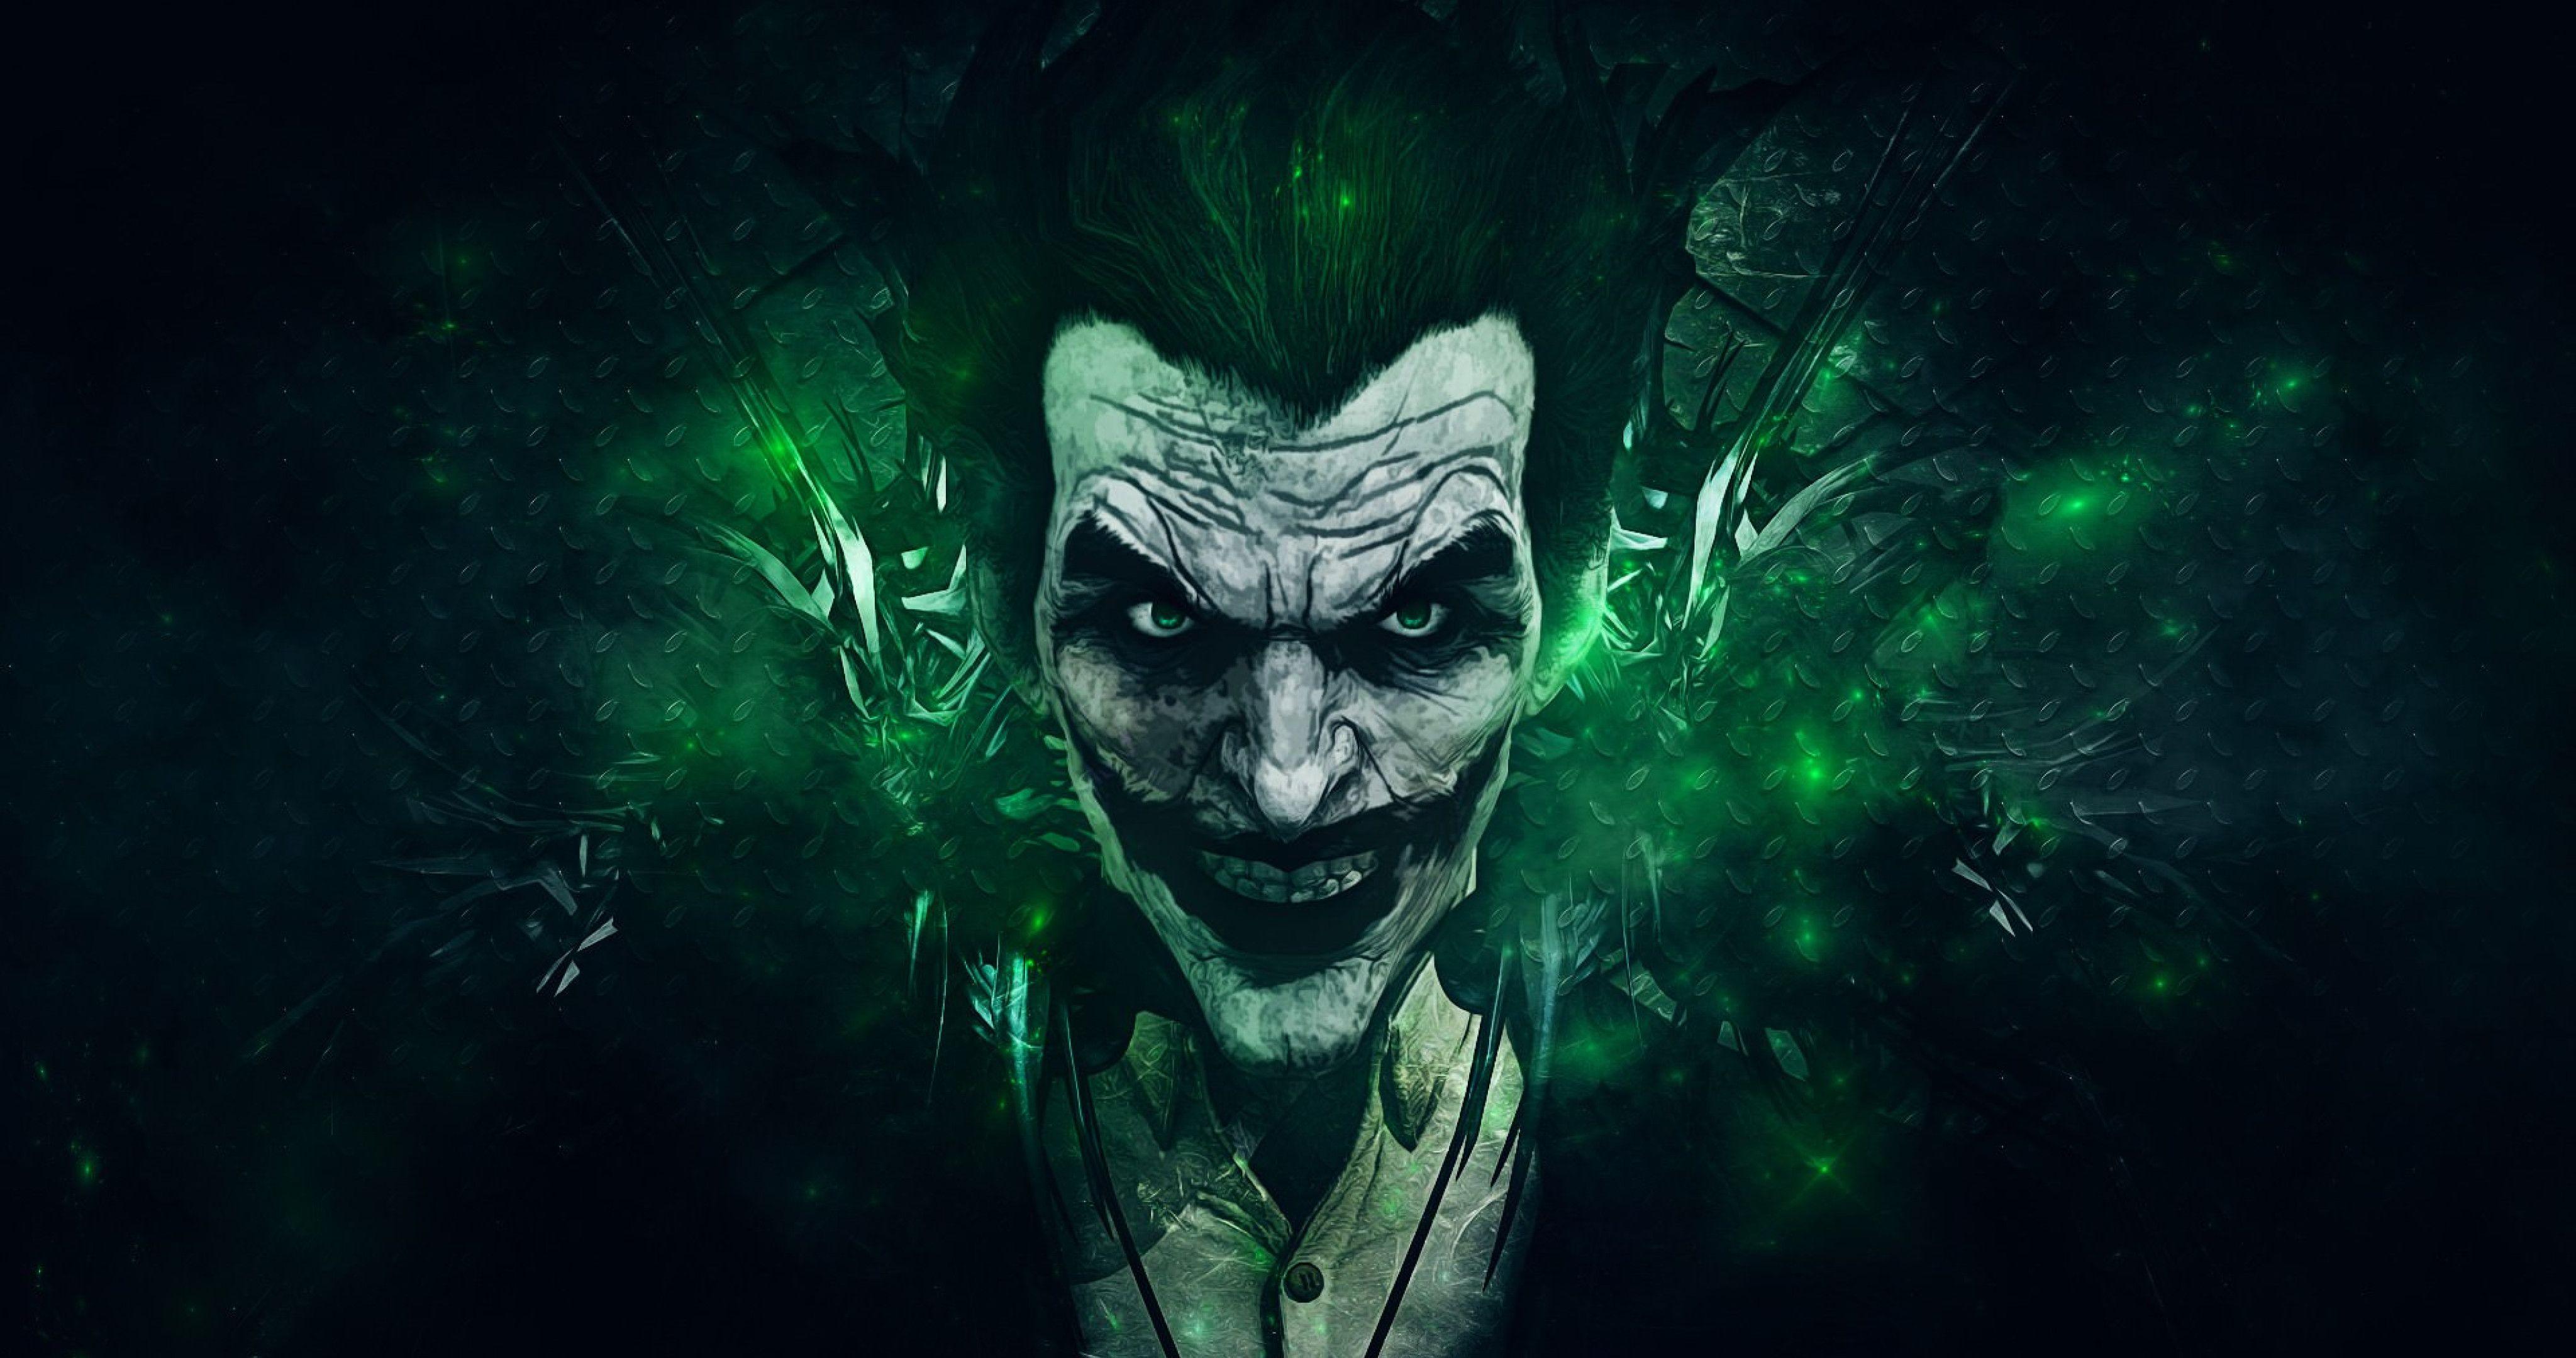 The Joker, Batman Wallpaper 4K (4096x2160) Resolution